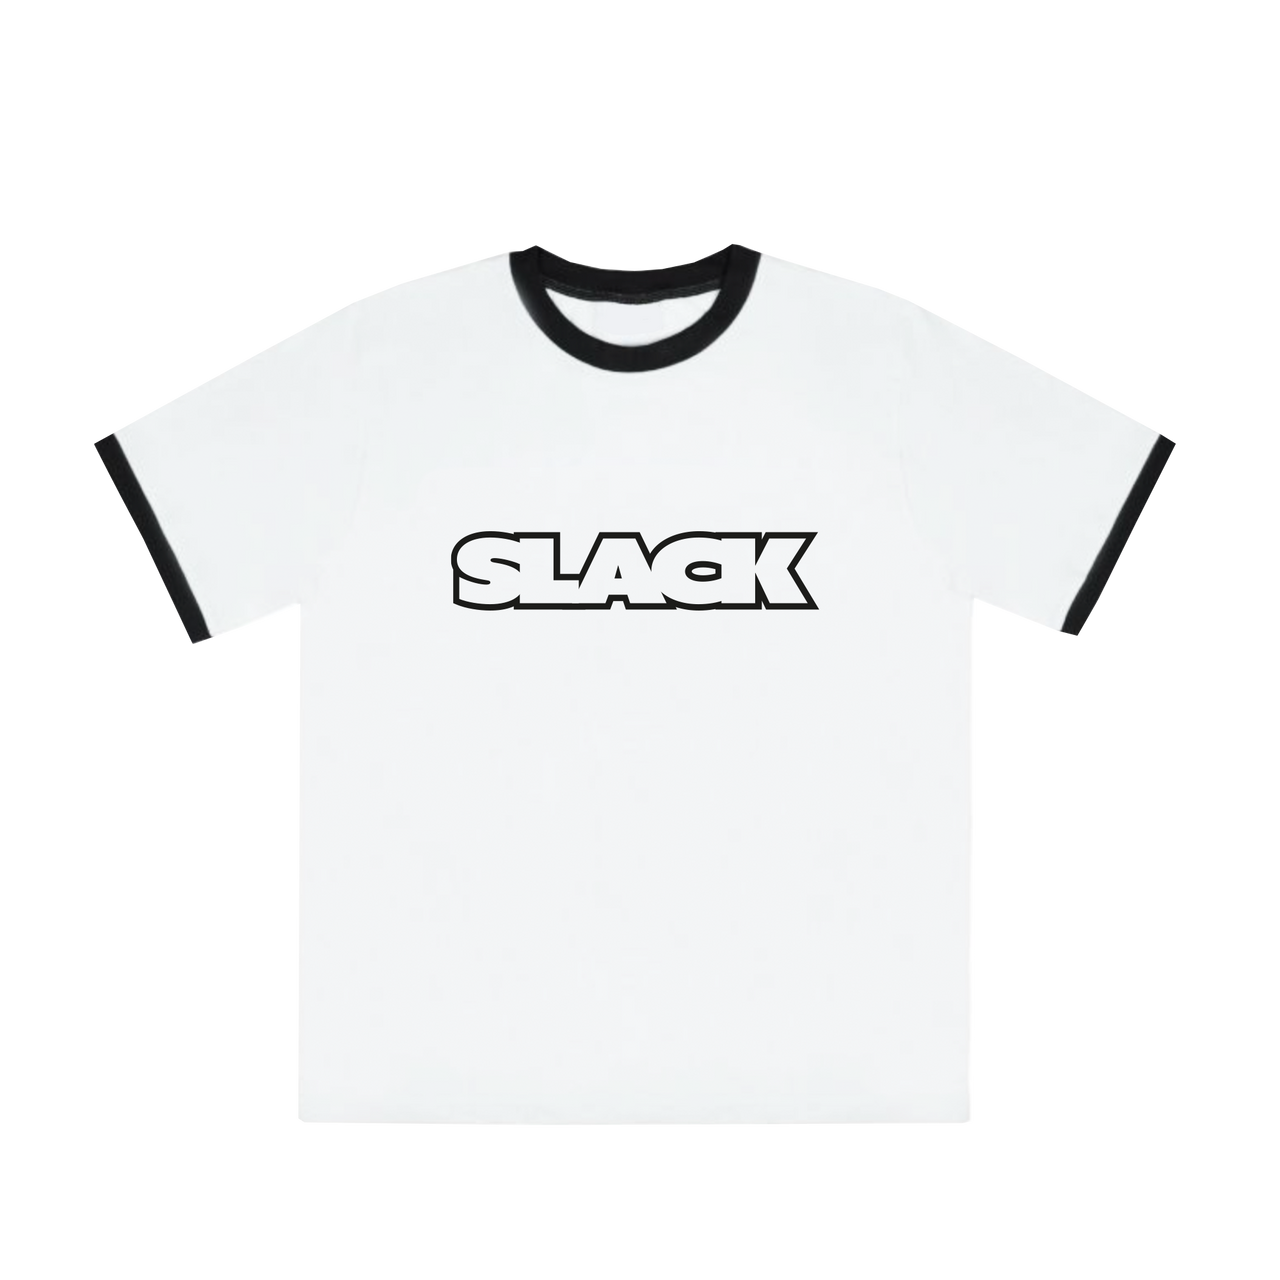 Slack "Classy" Ringer T-Shirt